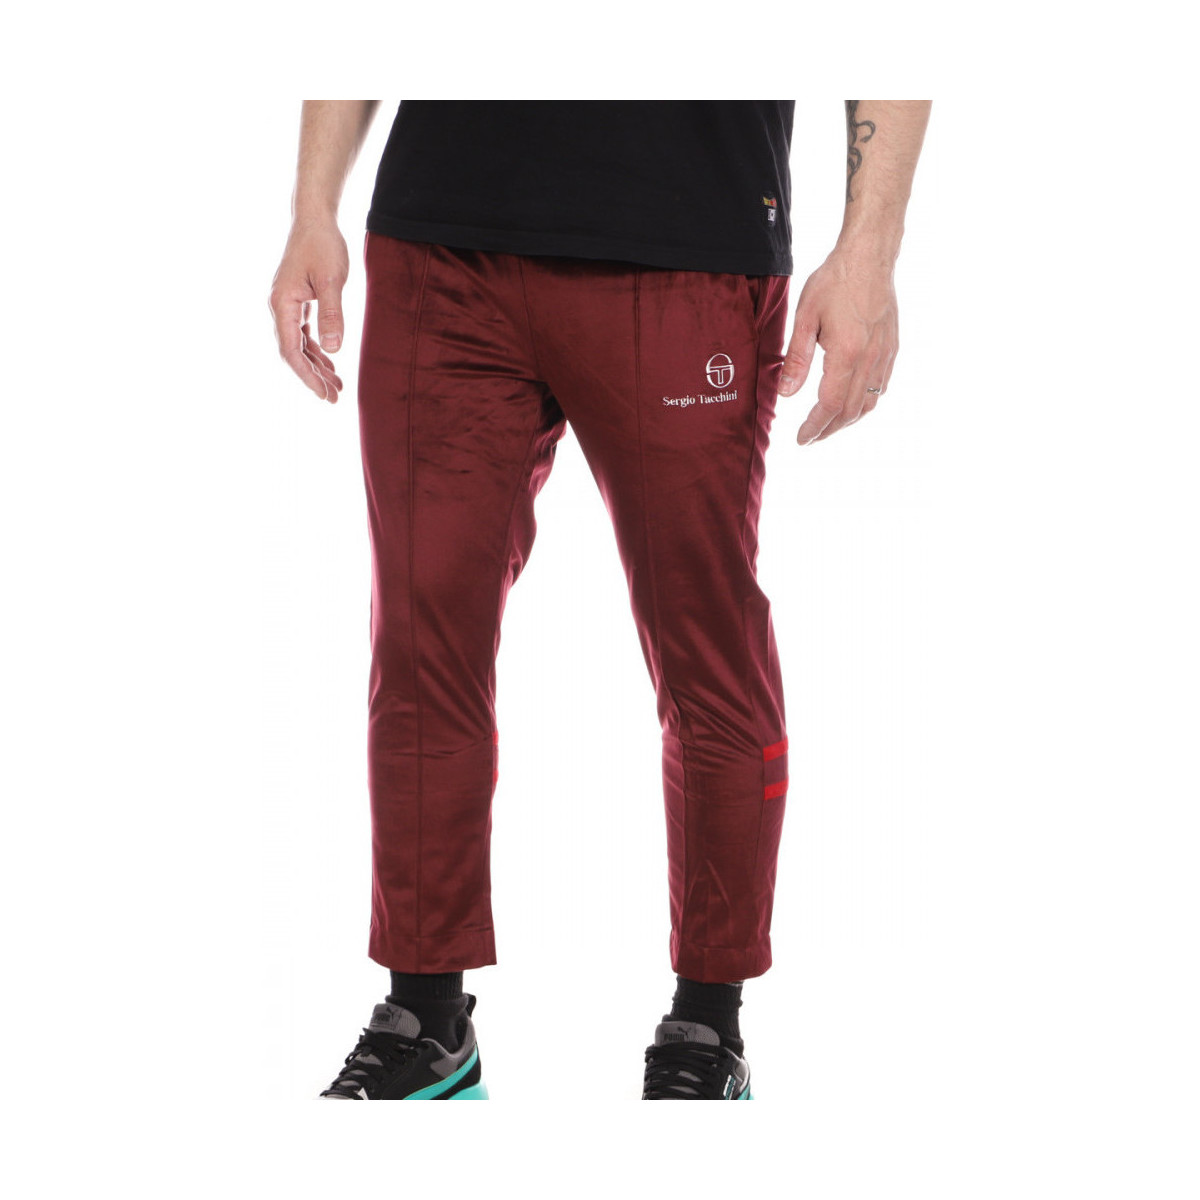 Abbigliamento Uomo Pantaloni da tuta Sergio Tacchini 38233-616RAR Rosso